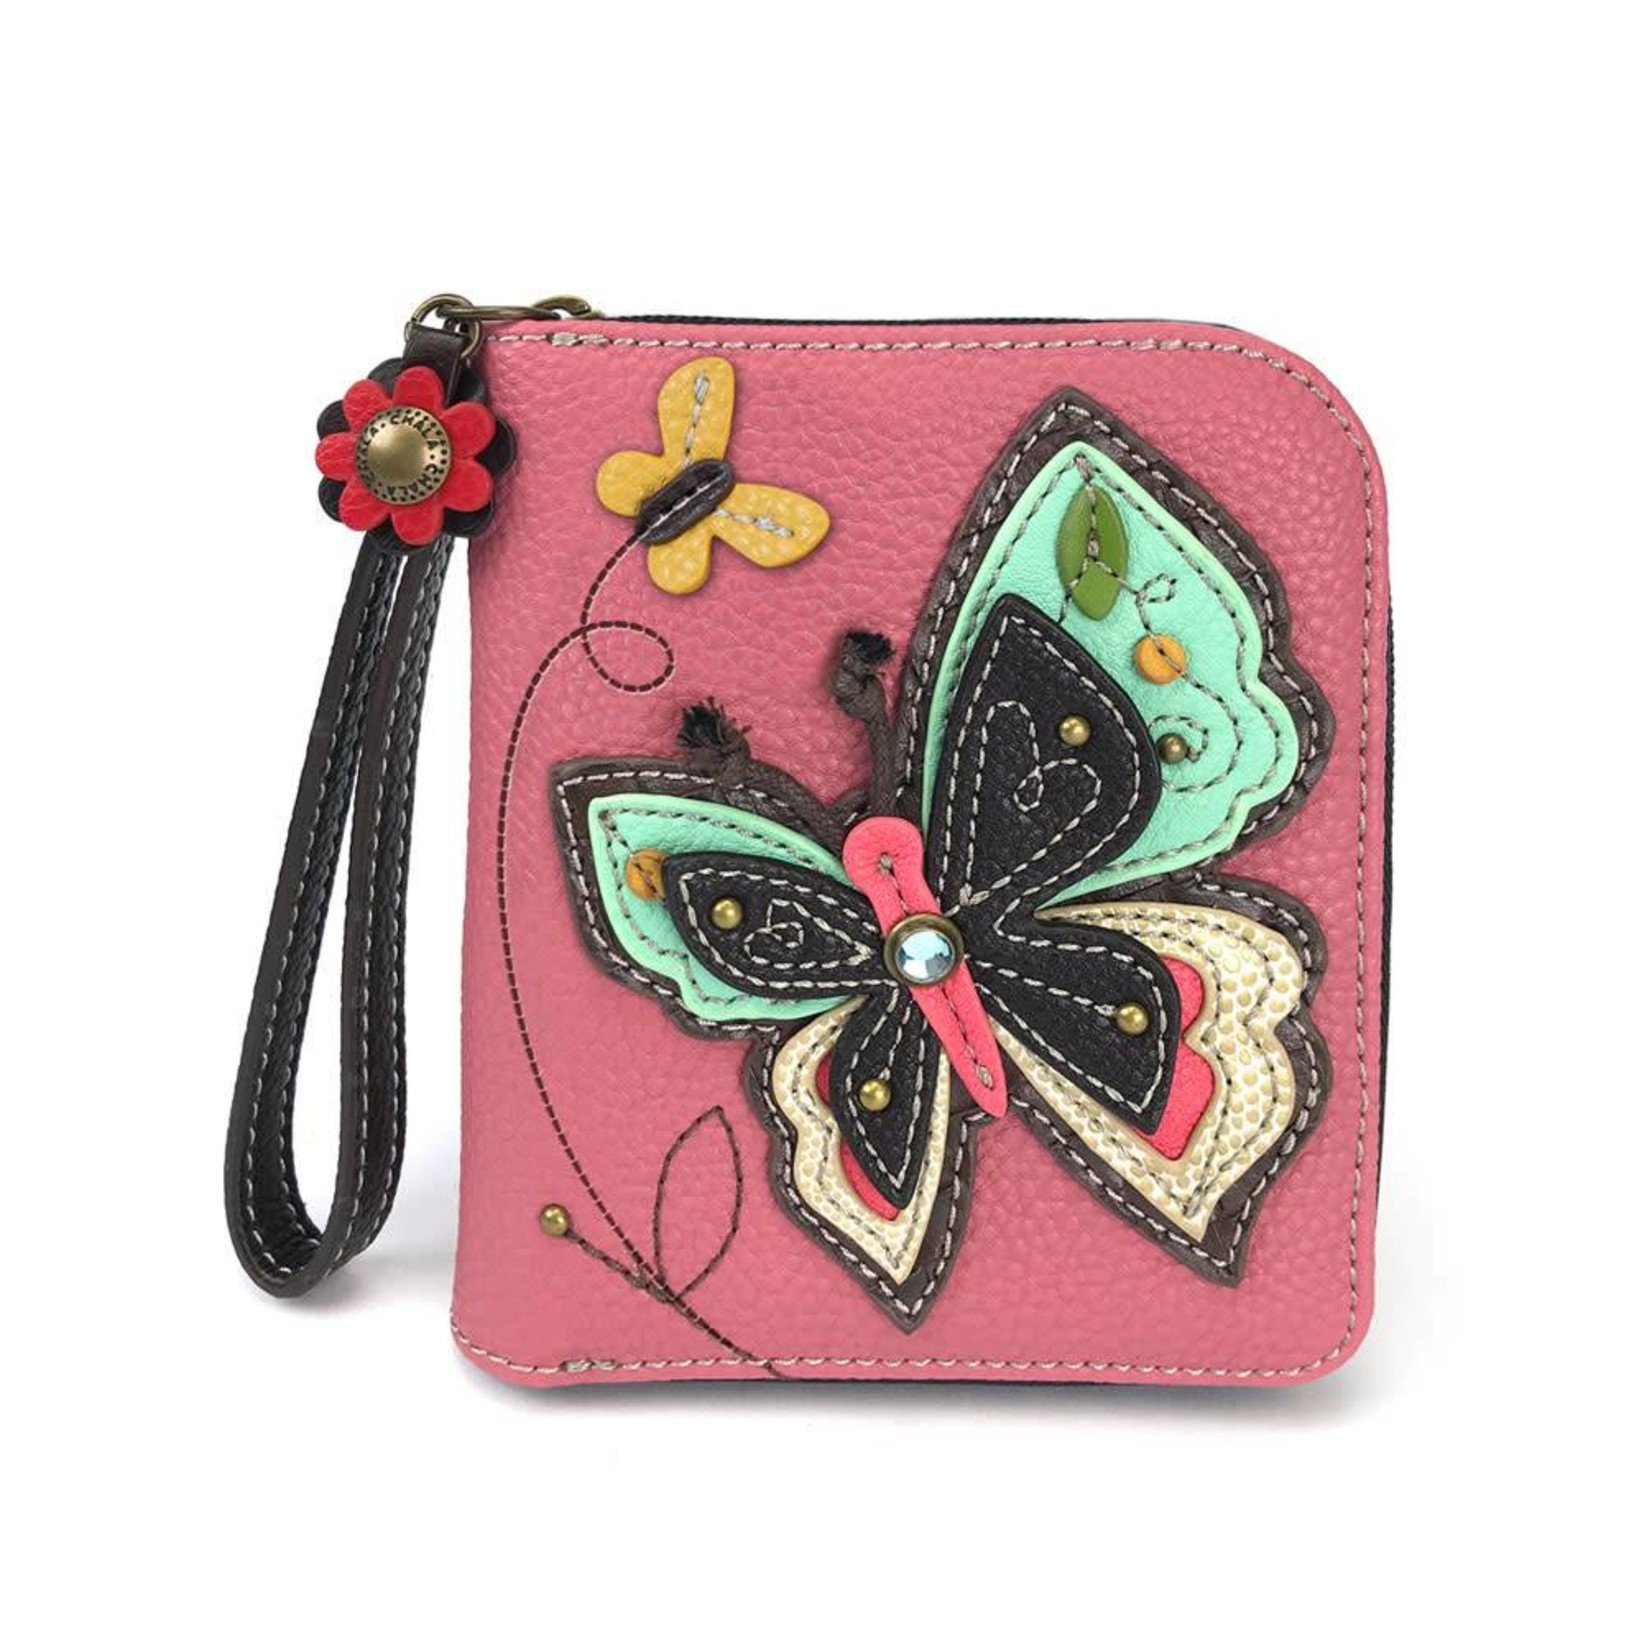 Chala Monarch Butterfly Wallet Crossbody